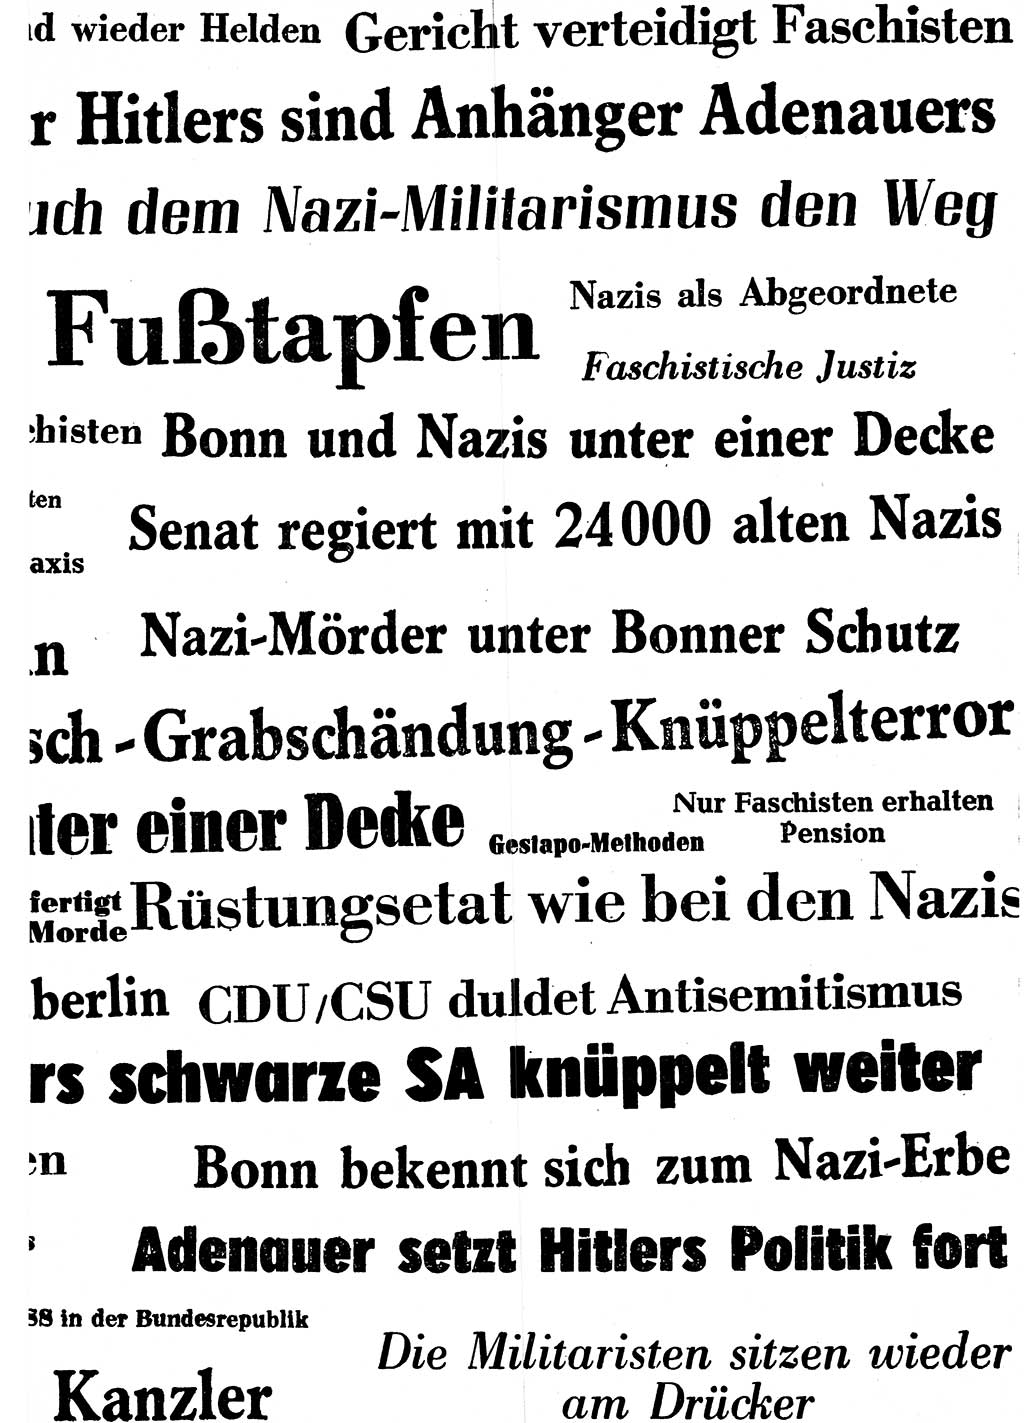 Ehemalige Nationalsozialisten in Pankows Diensten [Deutsche Demokratische Republik (DDR)] 1965, Seite 33 (Ehem. Nat.-Soz. DDR 1965, S. 33)